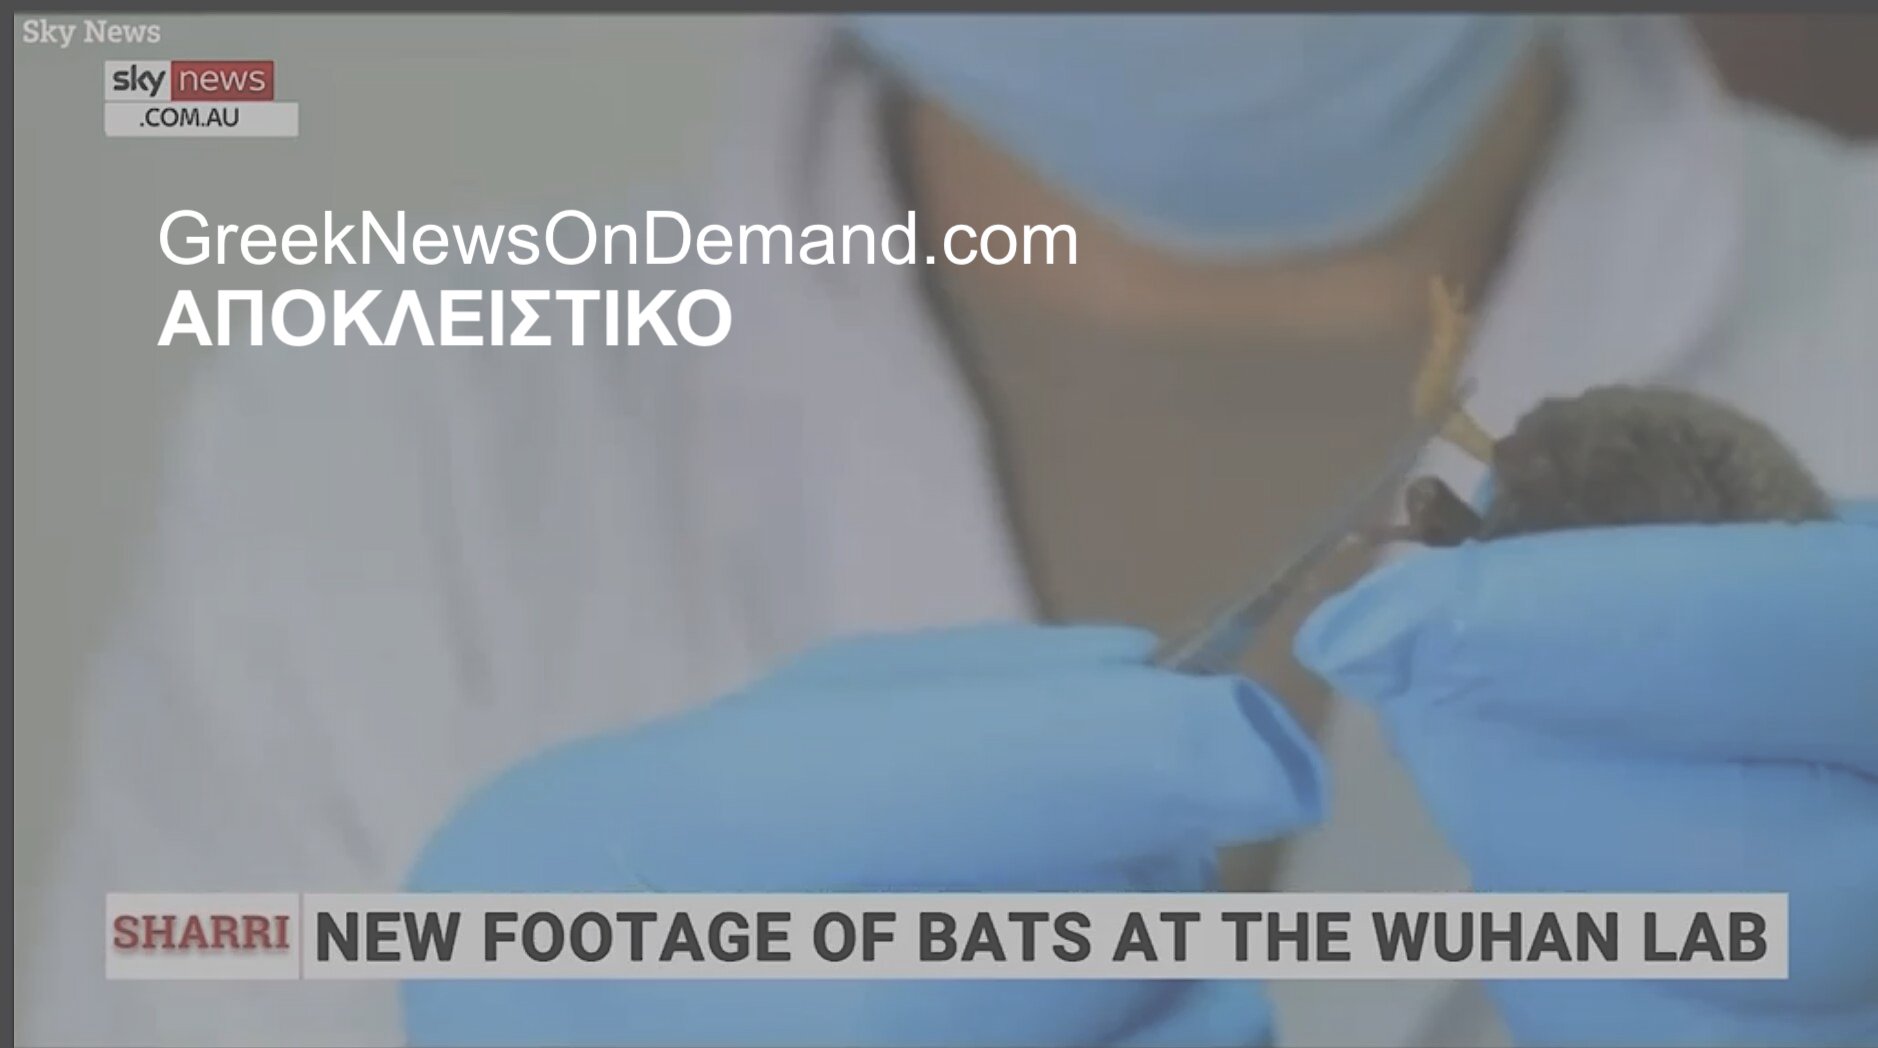 ΜΠΟΥΜ!!!: Η περιβόητη «Batwoman» της Κίνας έφτιαχνε ιούς-Φρανκενστεϊν για να μολύνει ανθρώπους χρησιμοποιώντας το HIV (AIDS) σε απαίσιο πείραμα πριν από τη “διαρροή Κόβιντ” από εργαστήριο της Κίνας!